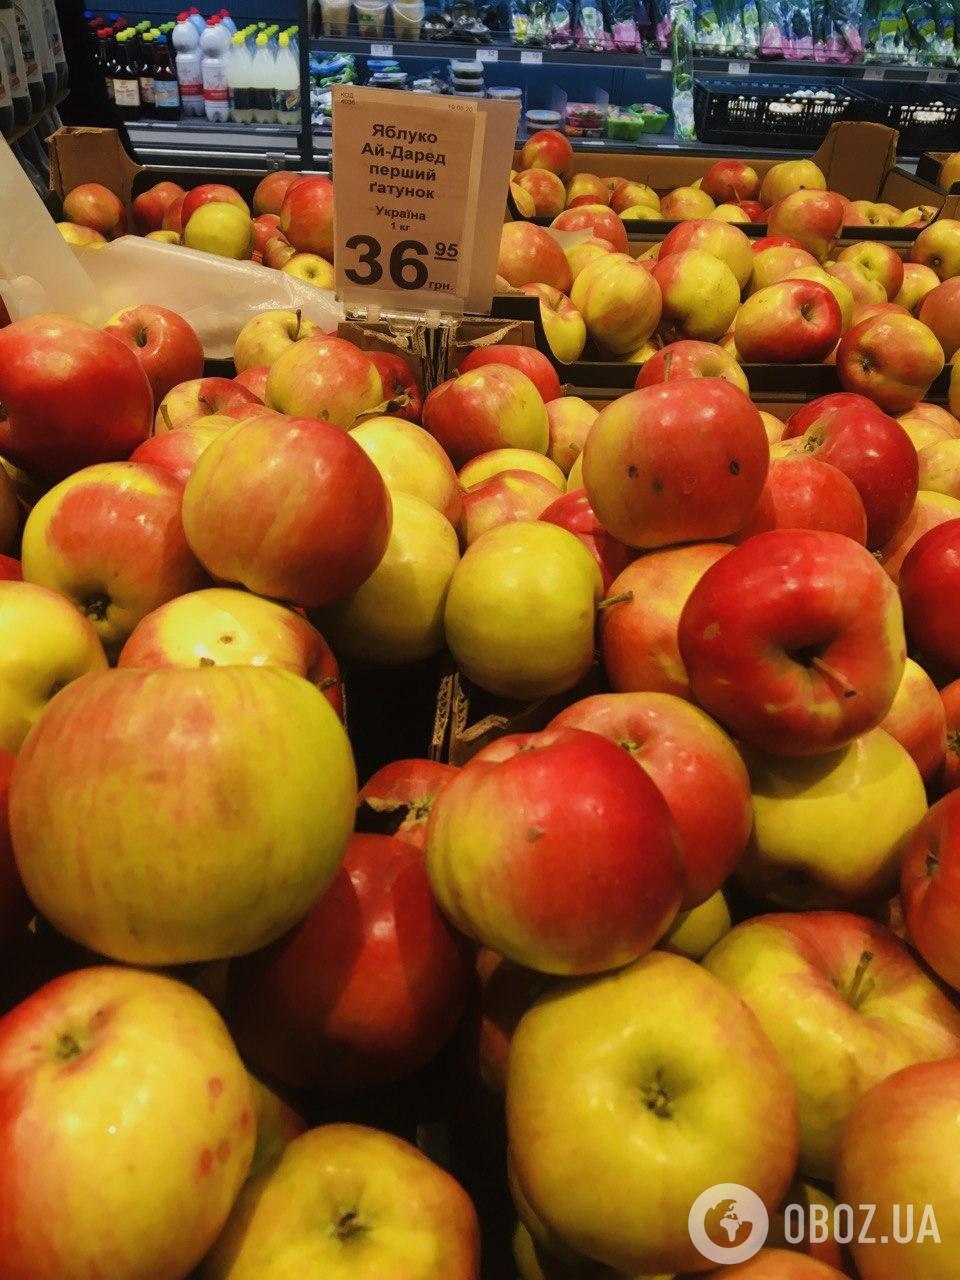 Яблоки стали дороже за последние несколько месяцев